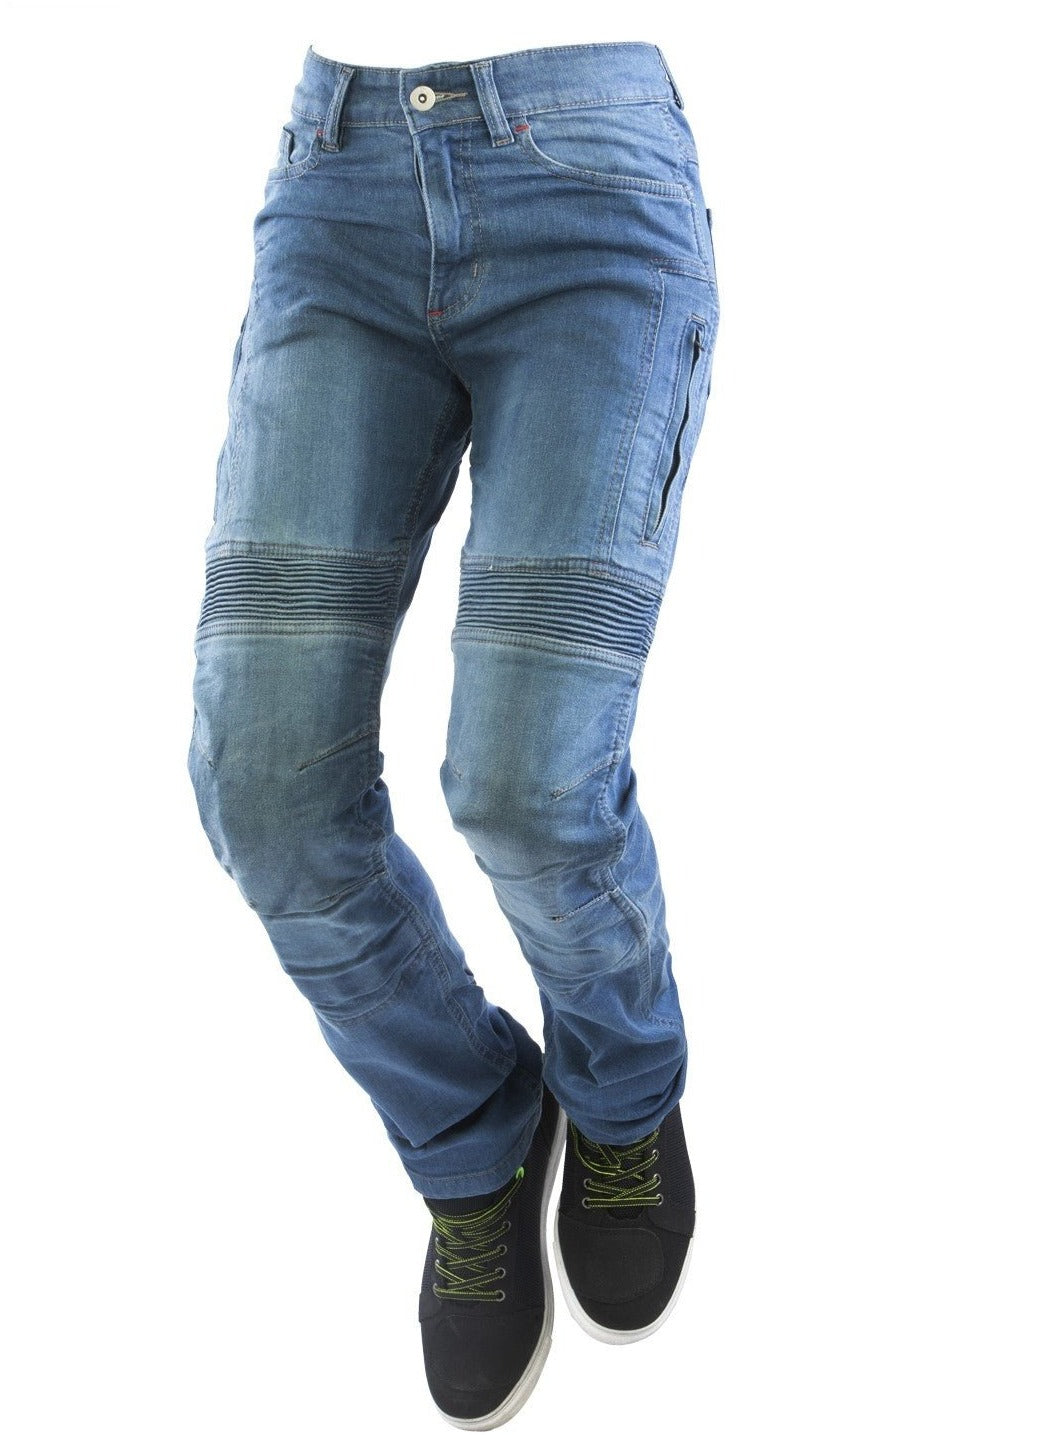 Jeans moto OJ UPGRADE donna estivi e ventilati con protezioni - OnTheRoad.shop - OJ